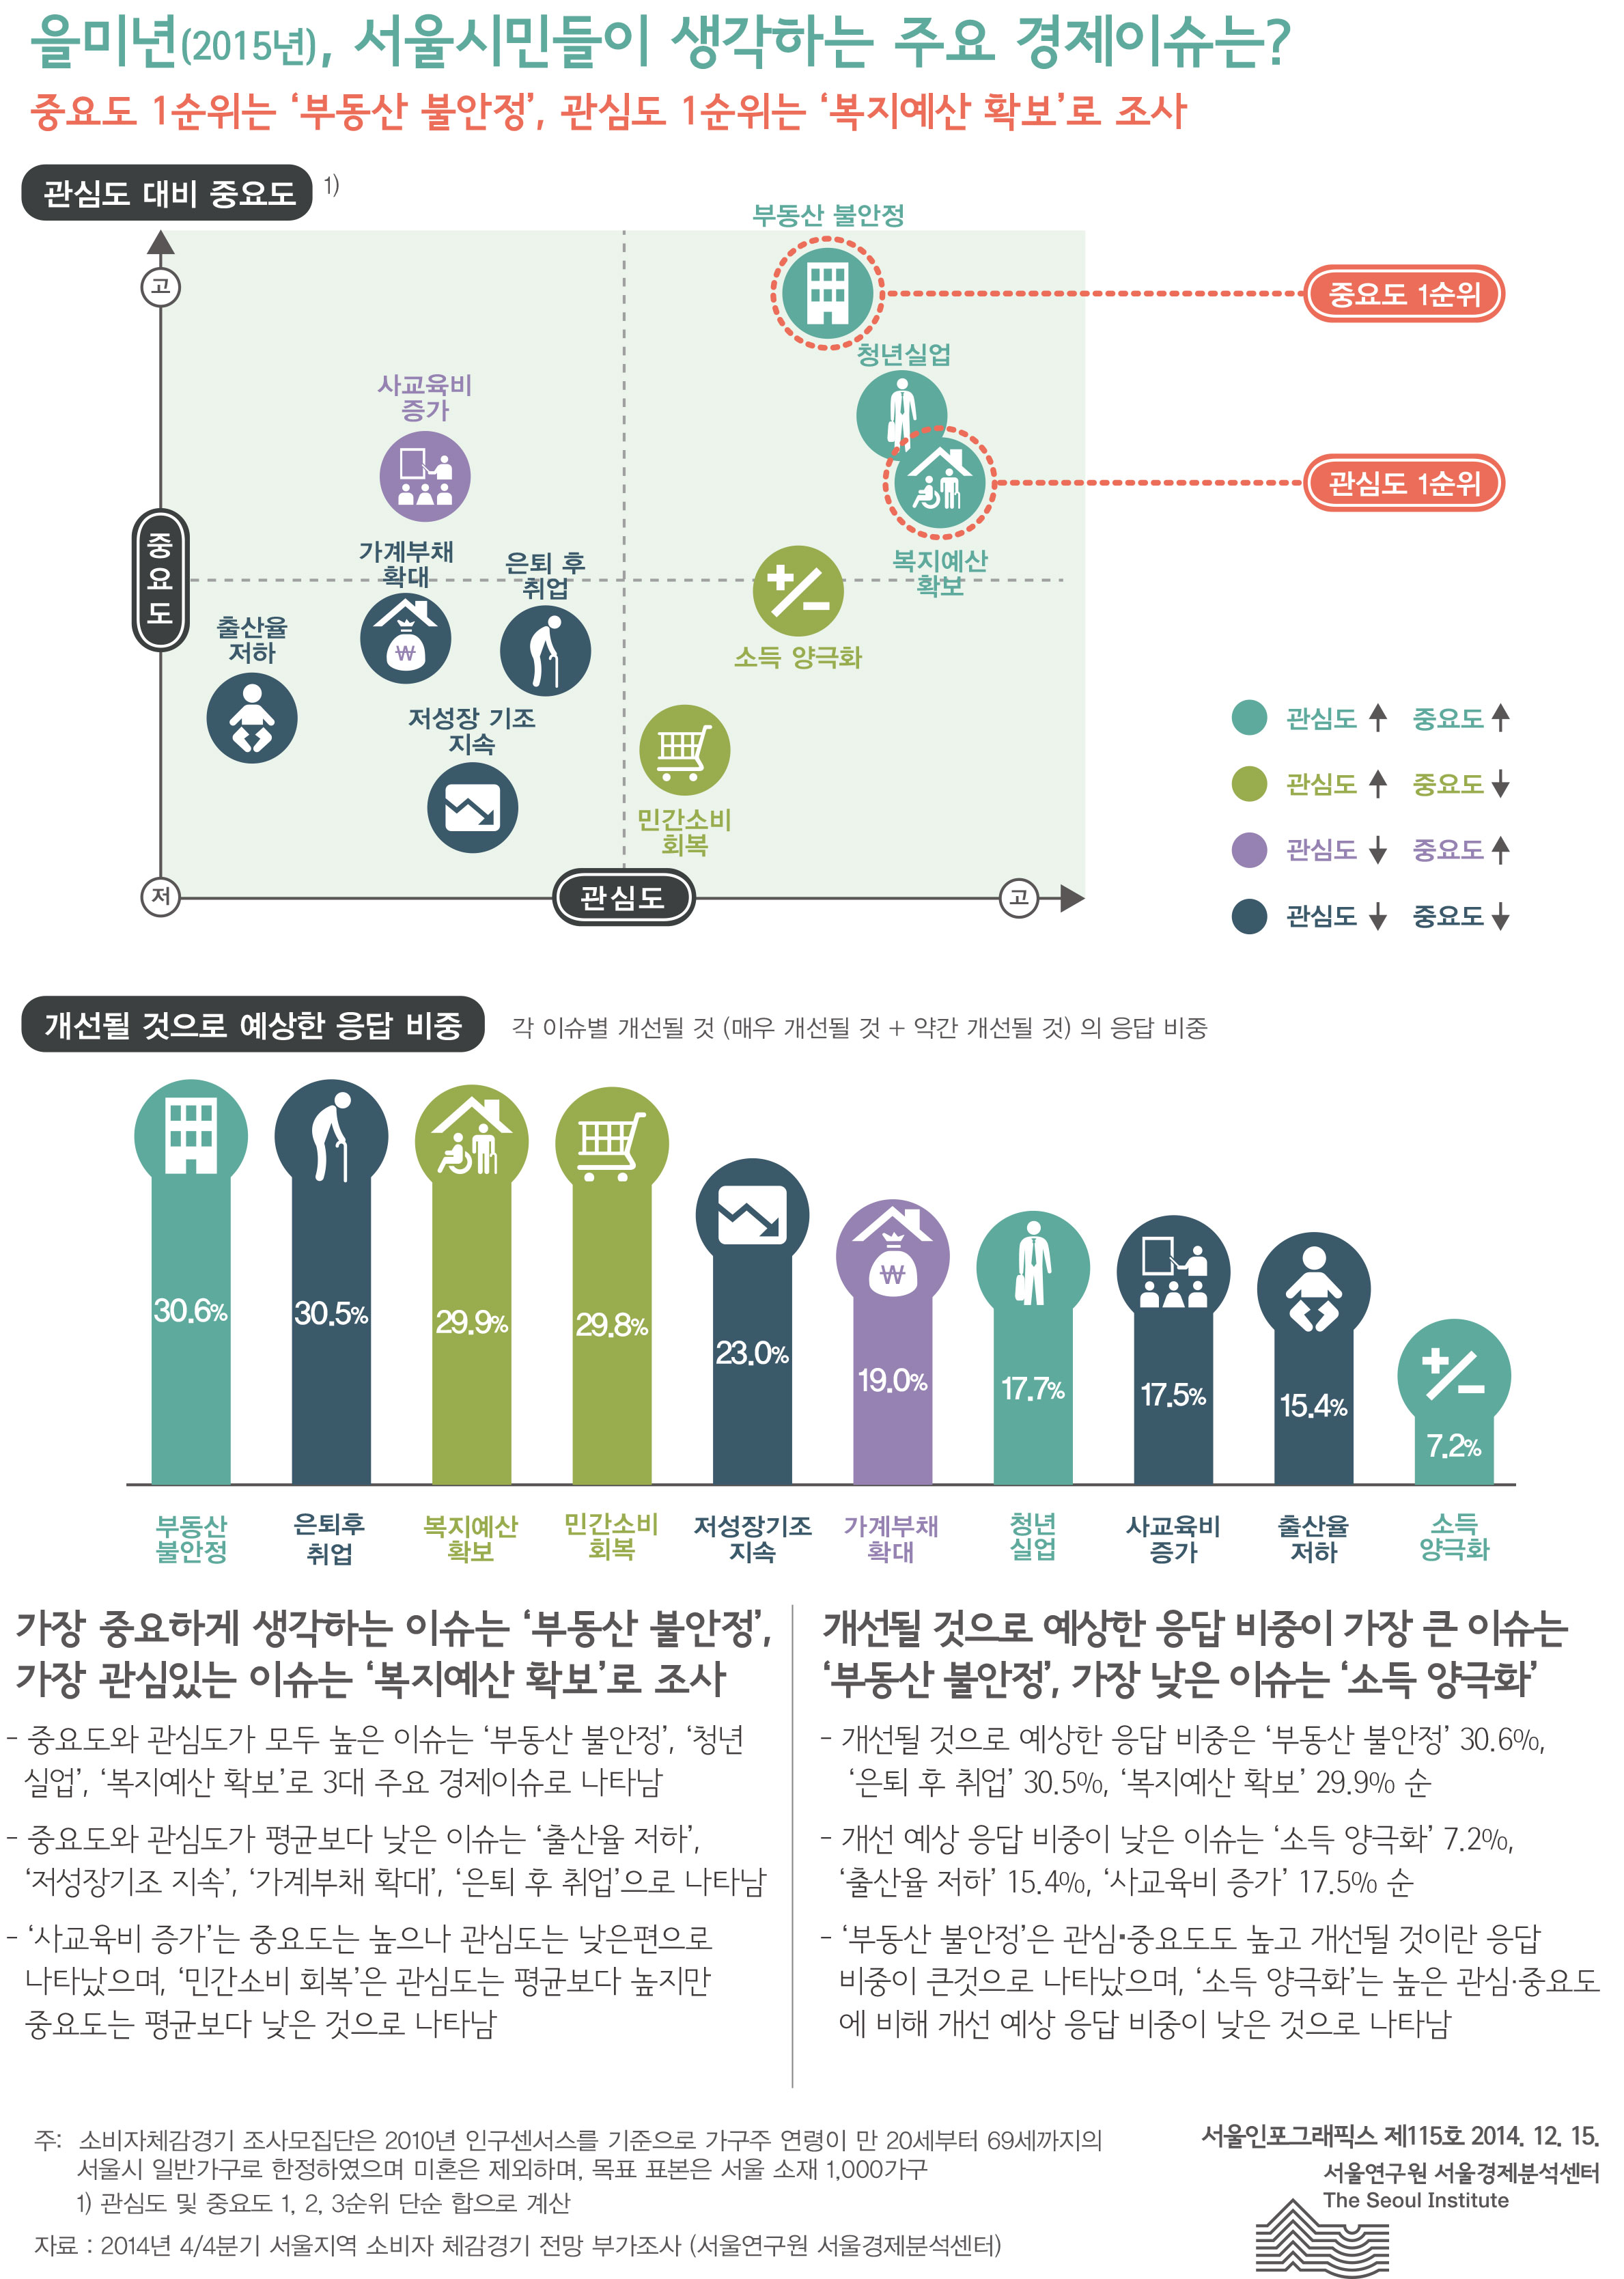 을미년(2015년), 서울시민들이 생각하는 주요 경제이슈는? 서울인포그래픽스 제115호 2014년 12월 15일 중요도 1순위는 ‘부동산 불안정’, 관심도 1순위는 ‘복지예산 확보’로 조사됨으로 정리될 수 있습니다. 인포그래픽으로 제공되는 그래픽은 하단에 표로 자세히 제공됩니다.